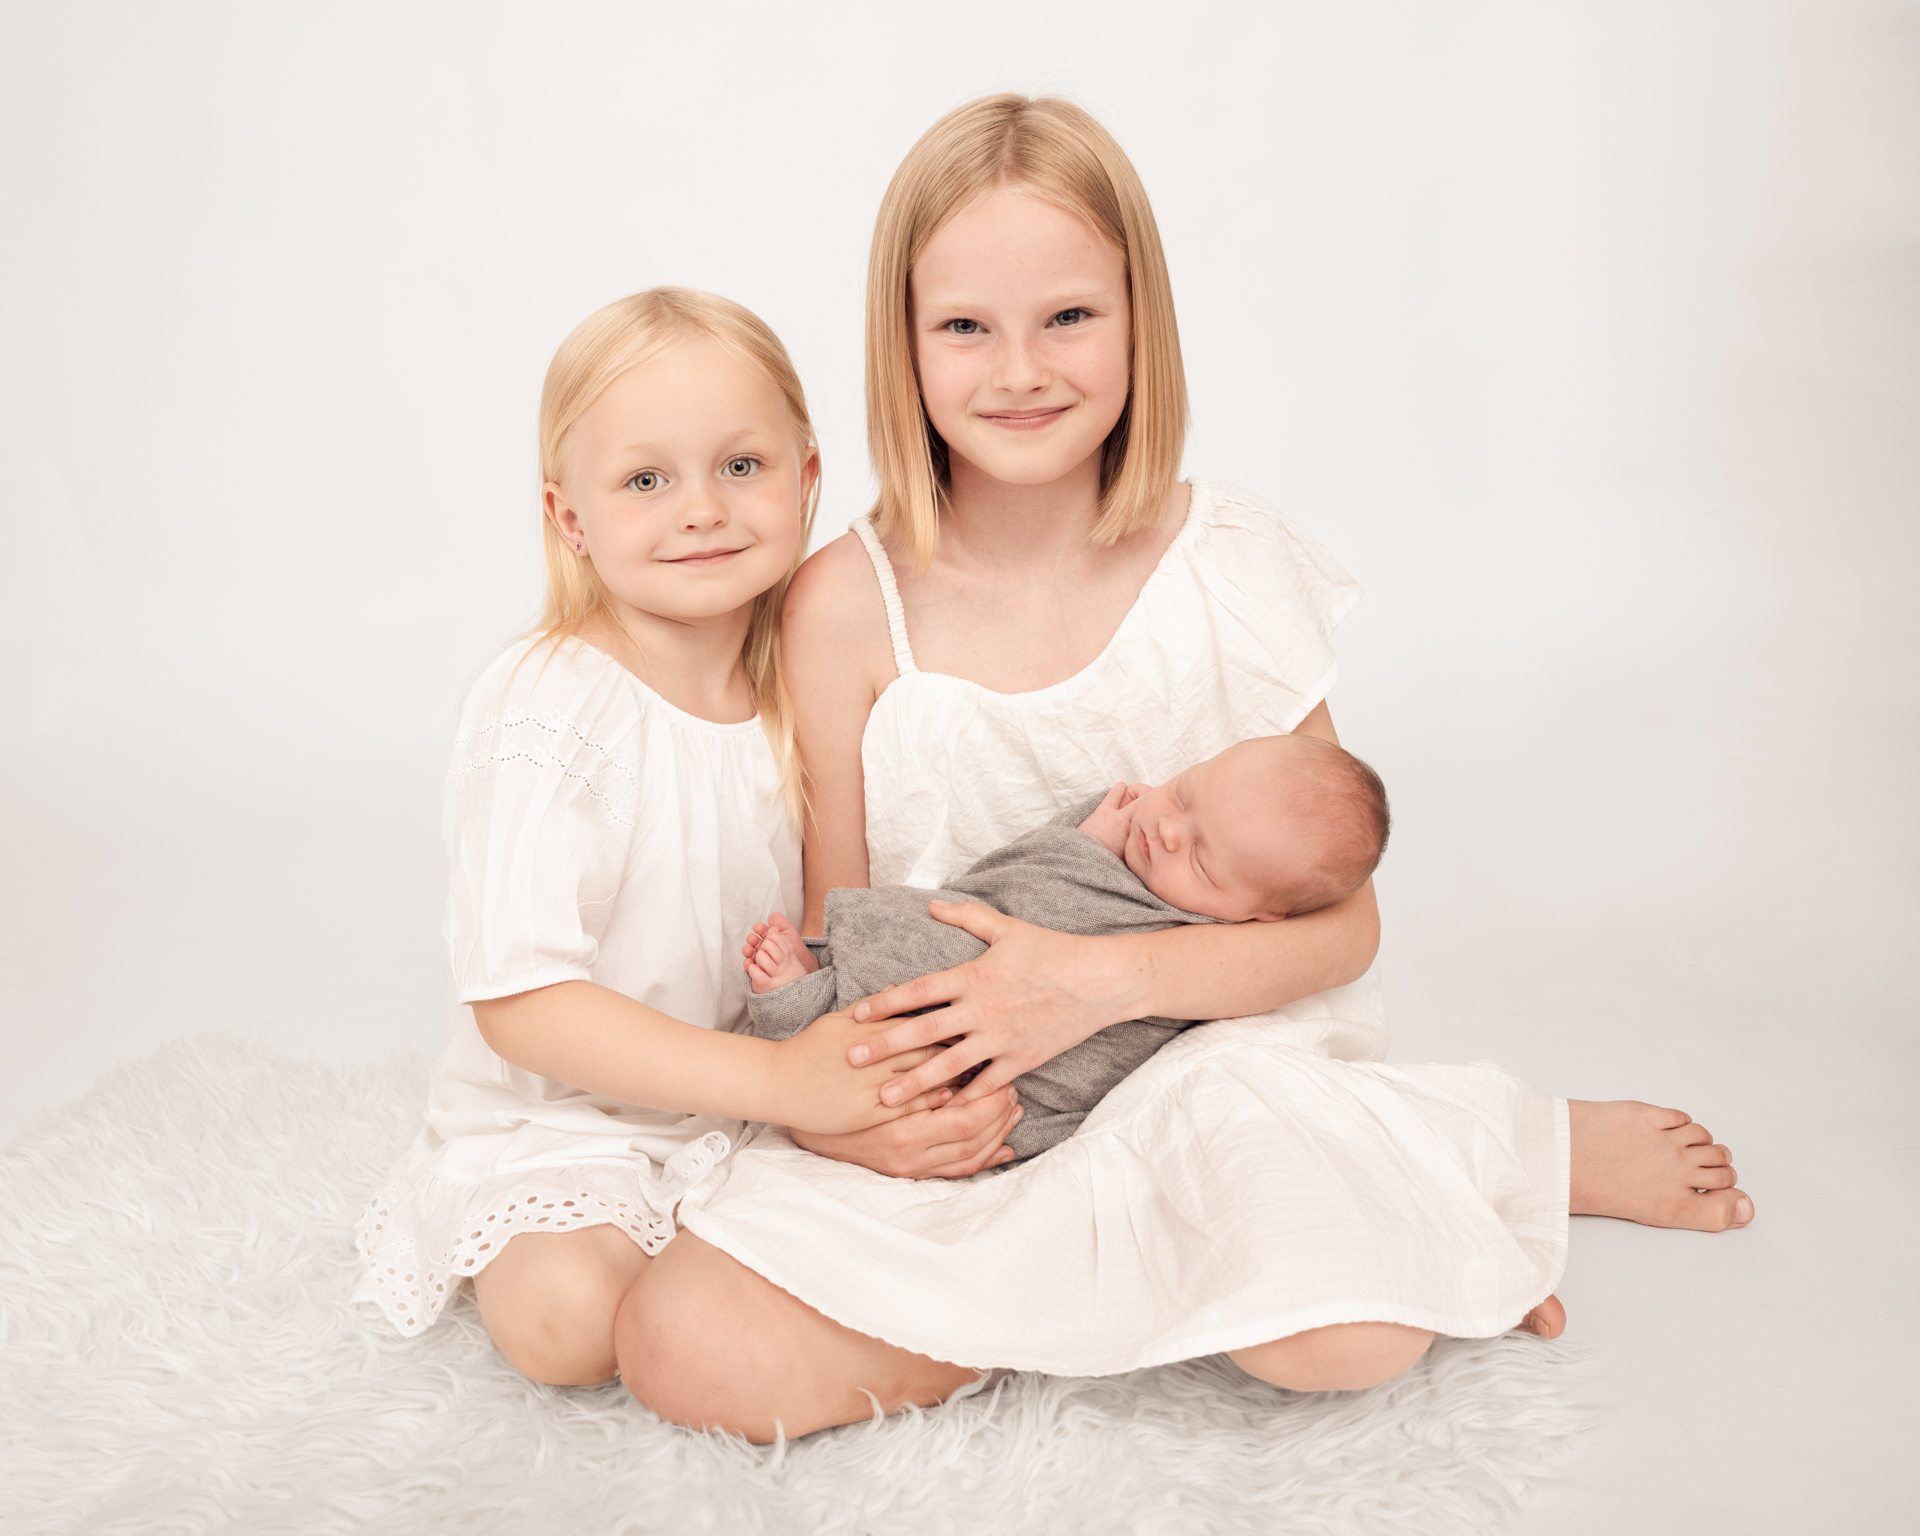 2 søstre holder sin nye lillesøster som kun er noen få dager gammel.